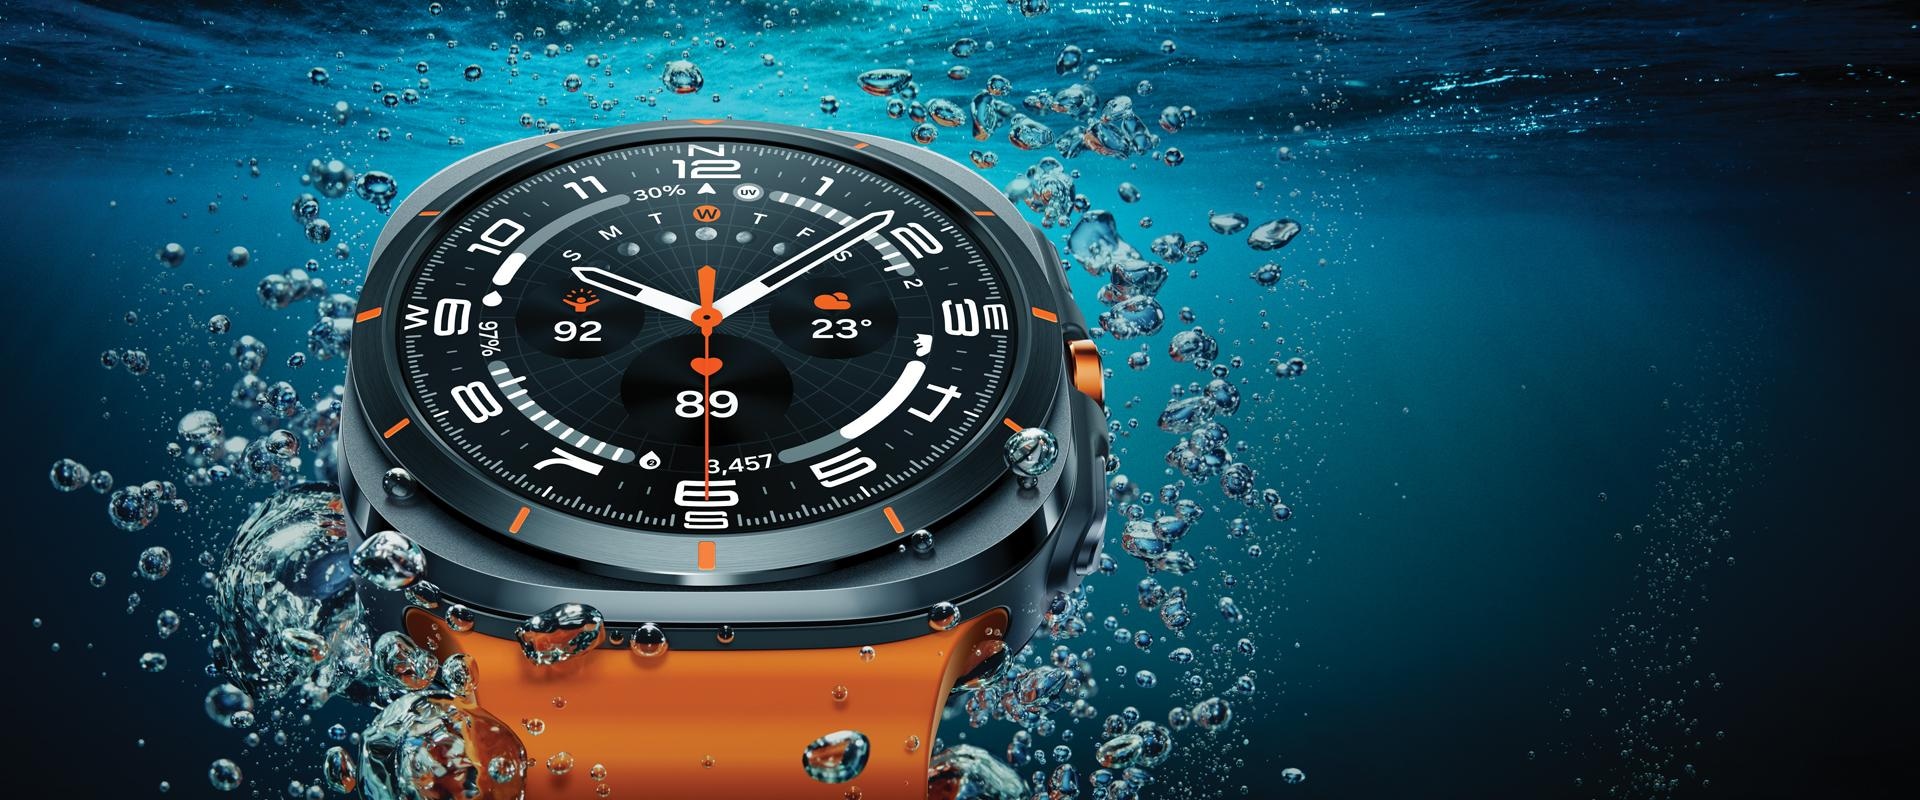 Galaxy Watch Ultra prikazuje se izbliza u vodi blizu površine, pokazujući njegov dizajn.